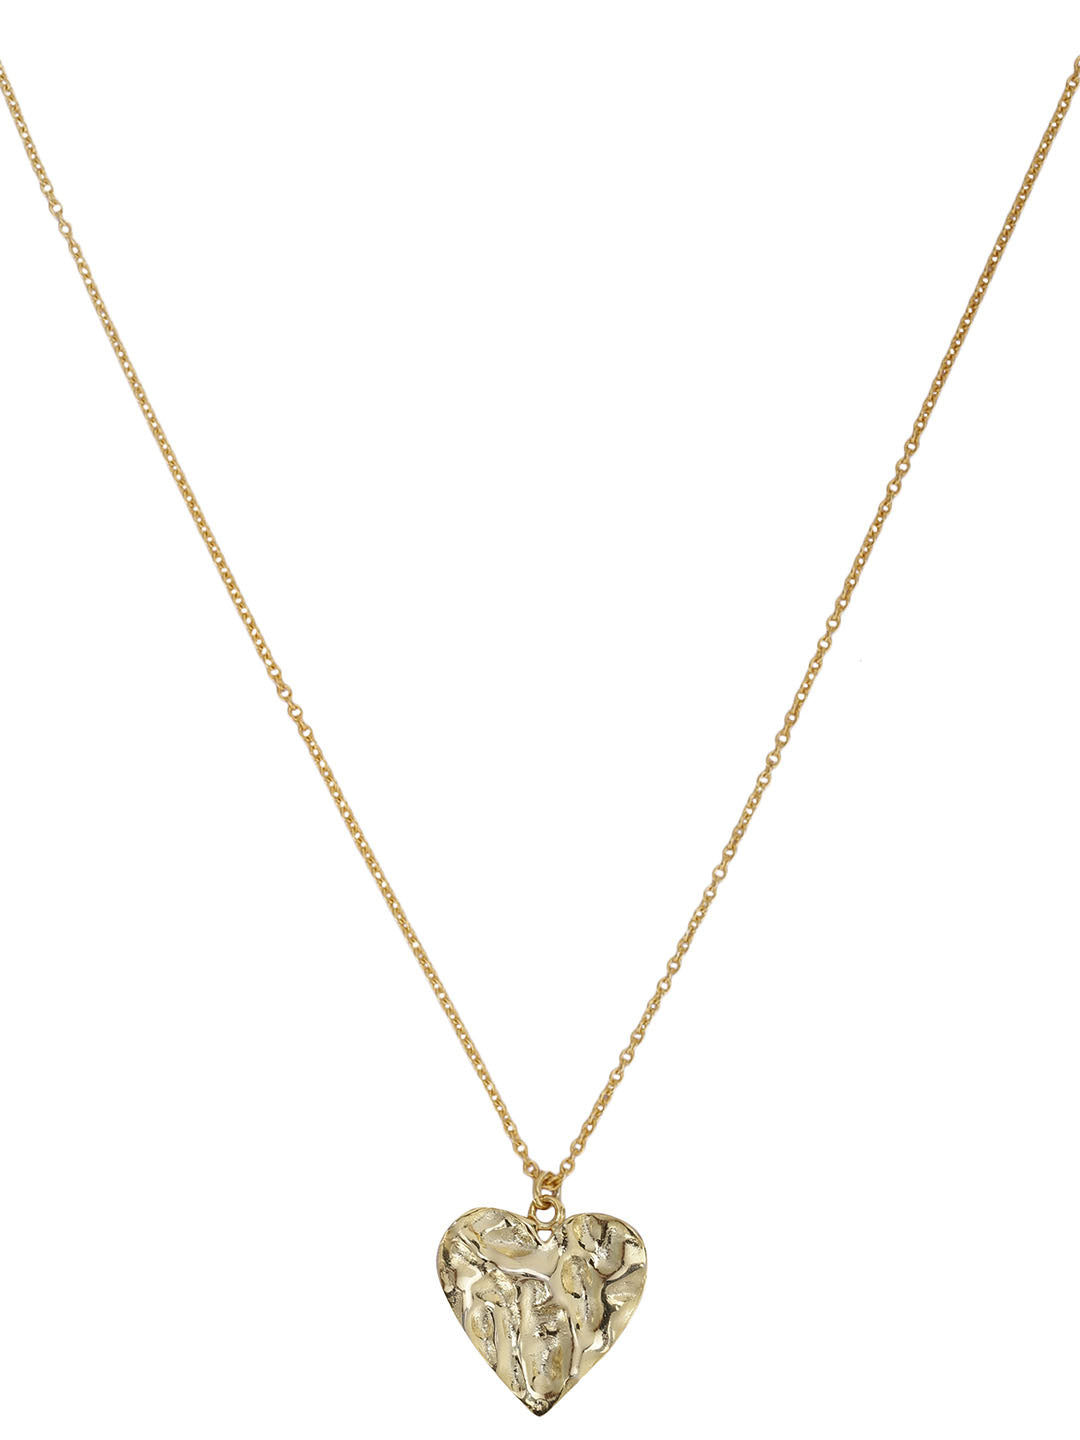 Gold Plated Textured Heart Necklace, Neckpiece - Shopberserk